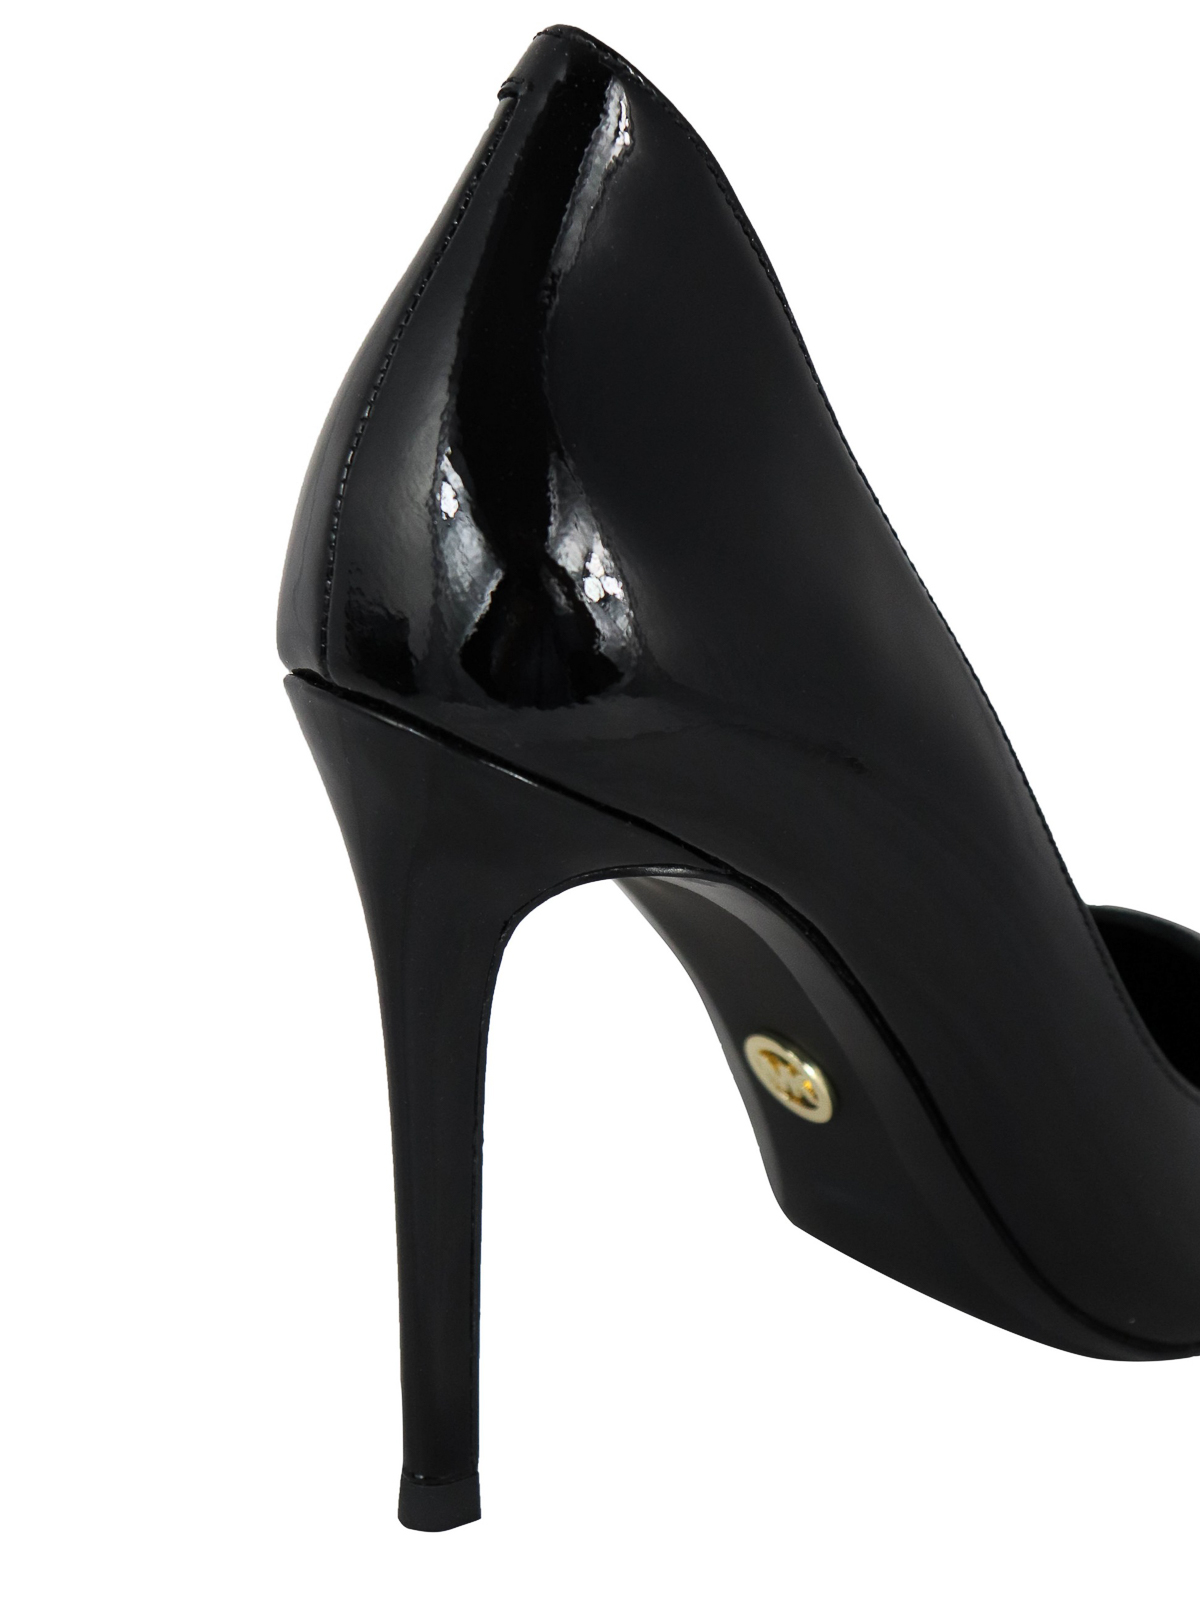 Court shoes Michael Kors - Keke black patent leather pumps - 40F9KEHP1A001